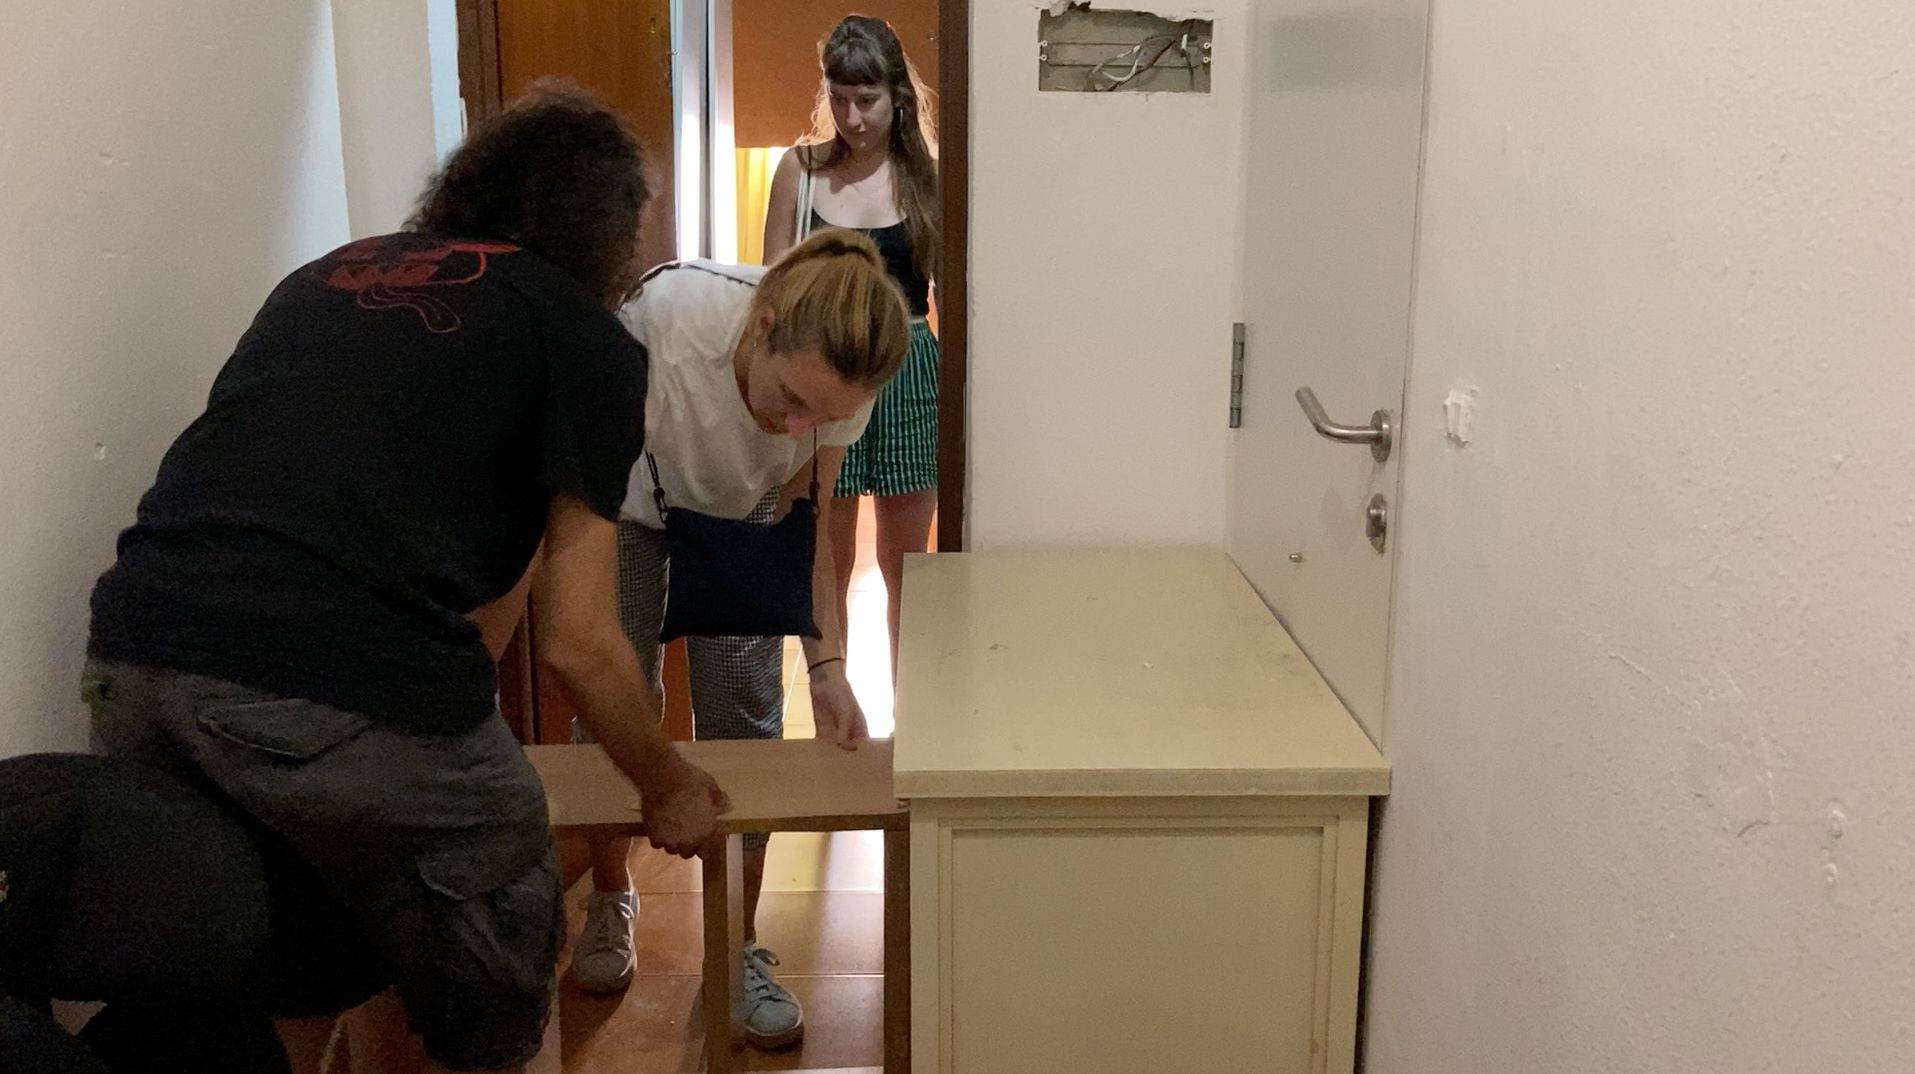 Desahucio de varias familias con niños que vivían en un edificio okupado en Palma